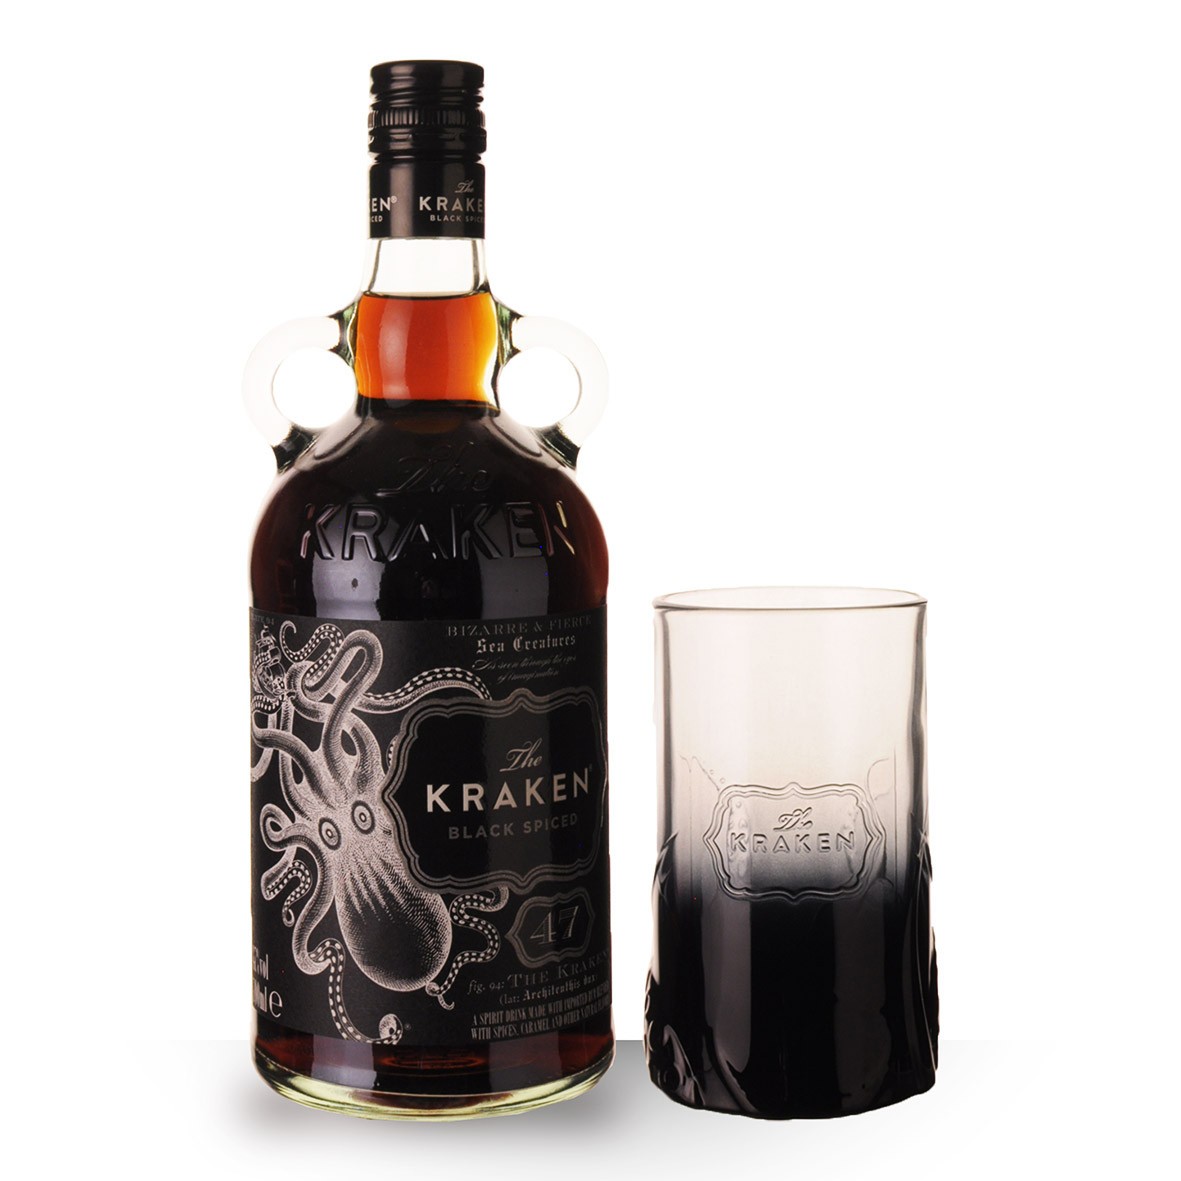 Achat de Rhum Kraken Black Spiced 47° Perfect Storm 70cl vendu en Coffret 1  verre sur notre site - Odyssee-vins